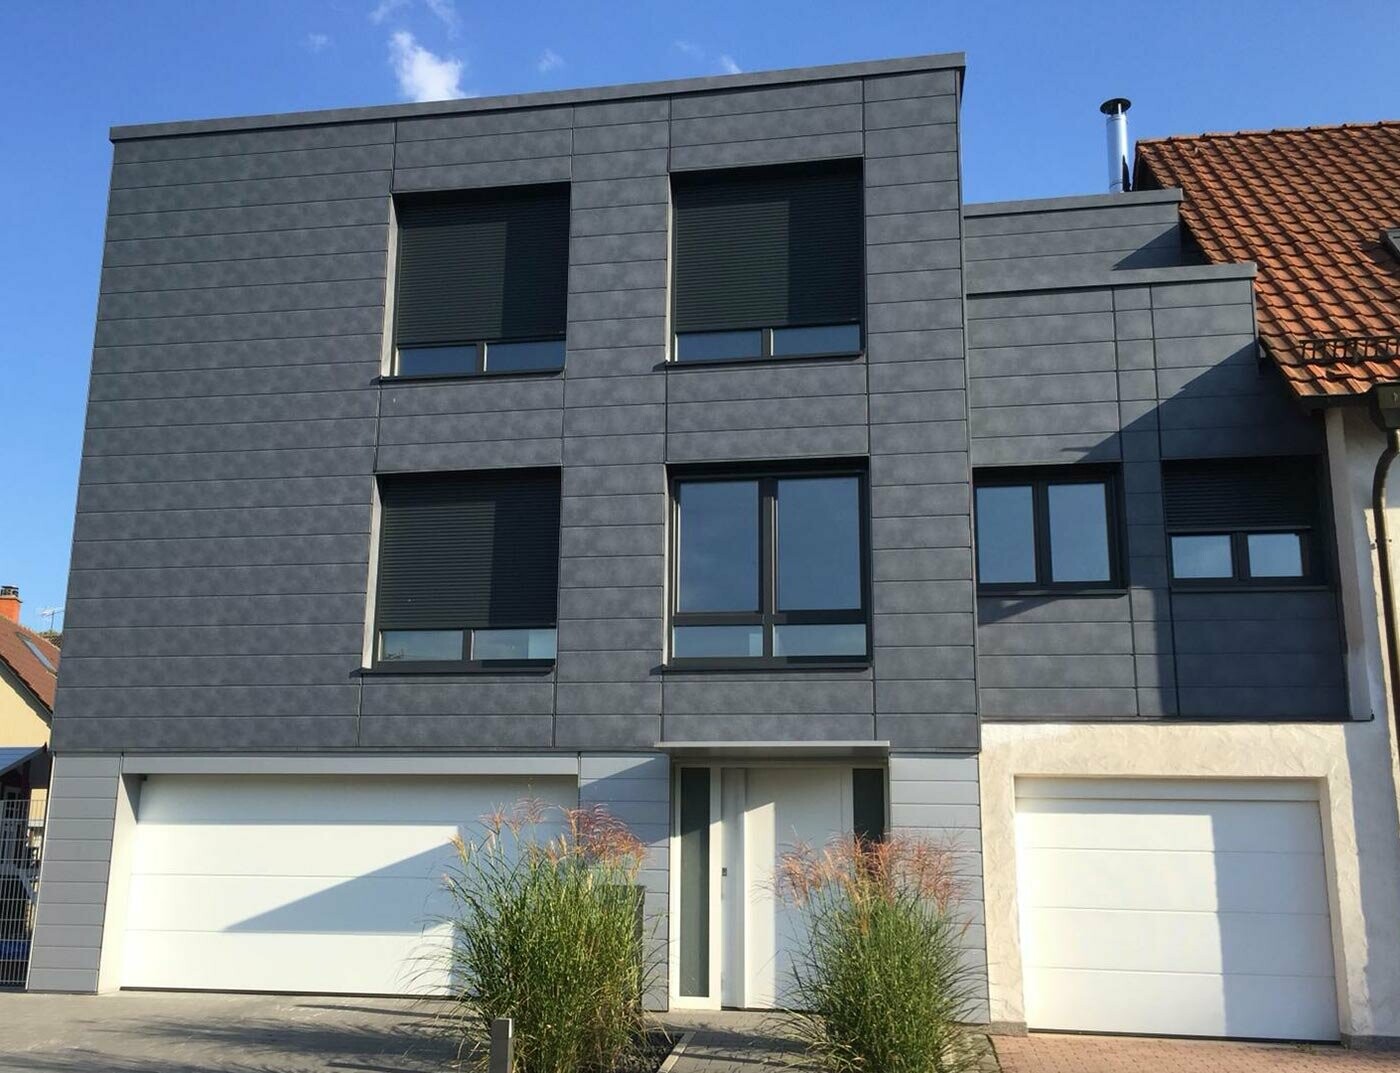 Conception de façade à l’aide de panneaux aluminium, les Sidings couleur gris pierre de PREFA.